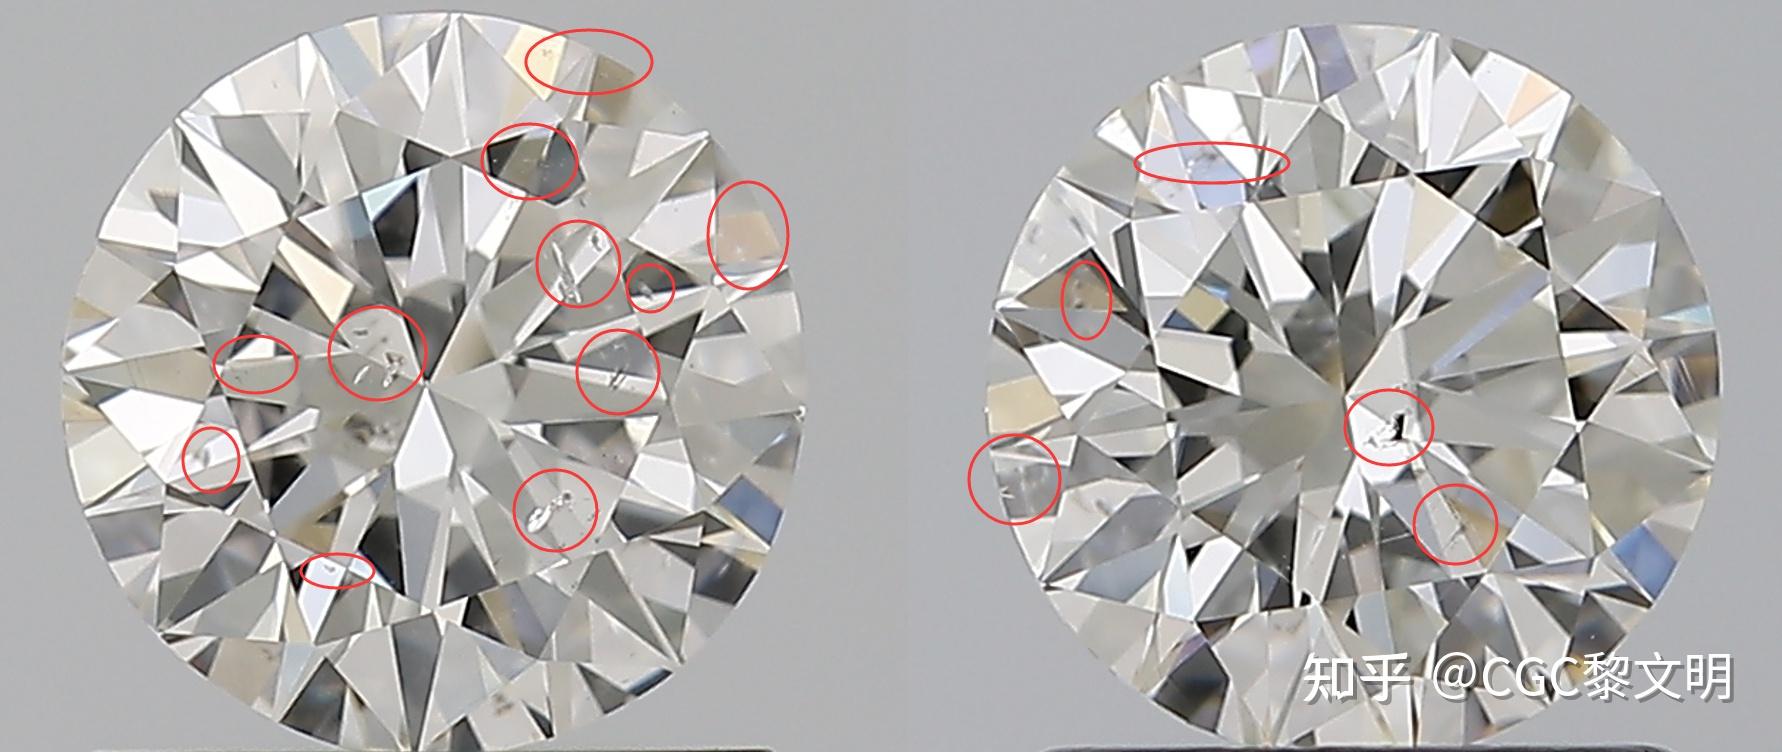 钻石内部净度特征有哪些,钻石净度分级从哪几个角度评判内含物是否影响净度级别